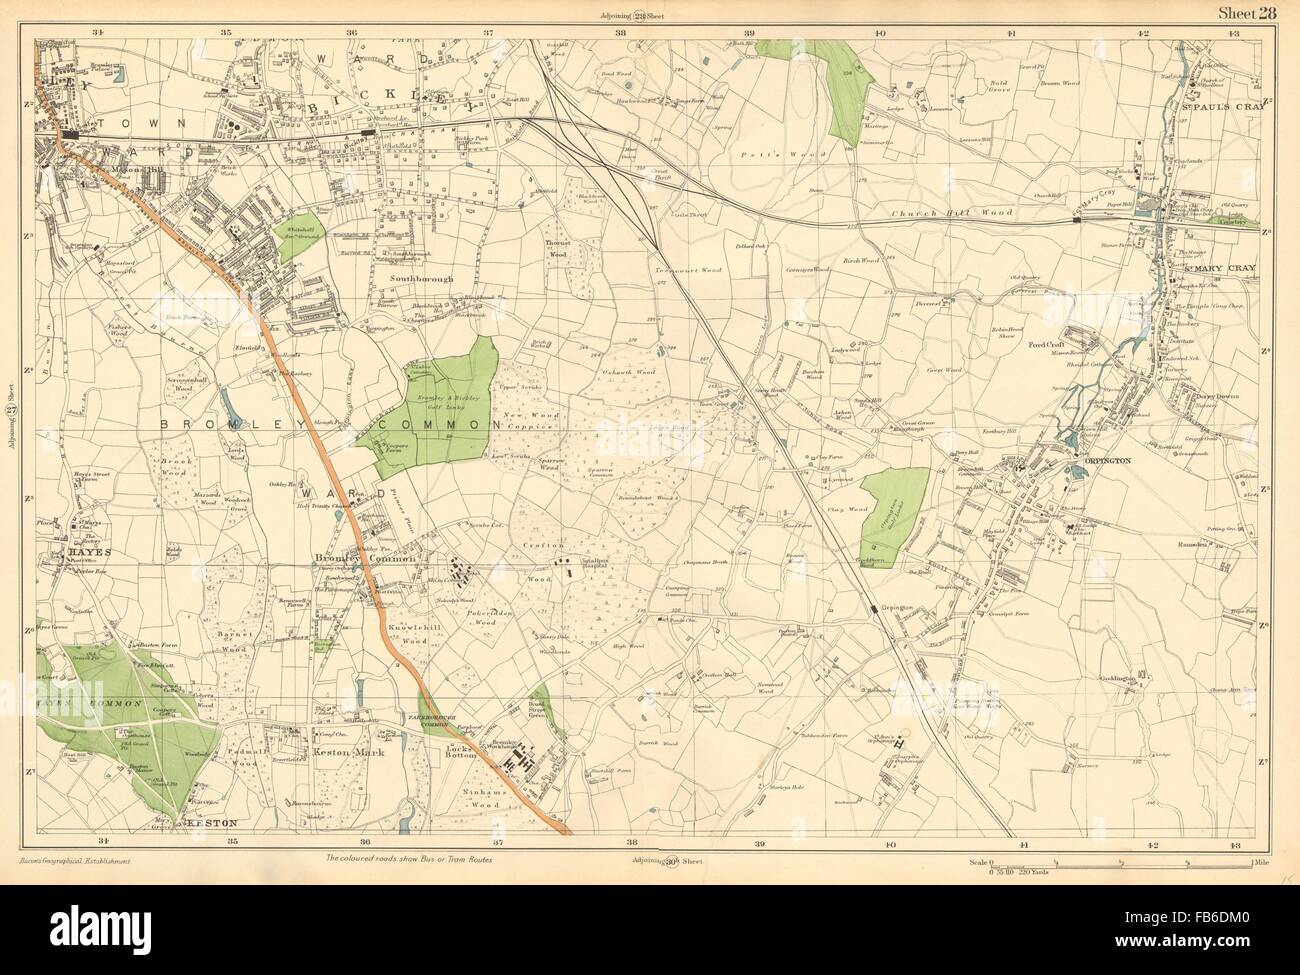 BROMLEY ORPINGTON:Hayes,Petts Wood,Keston,St Paul's Mary Cray(Bacon), c1911 map Stock Photo